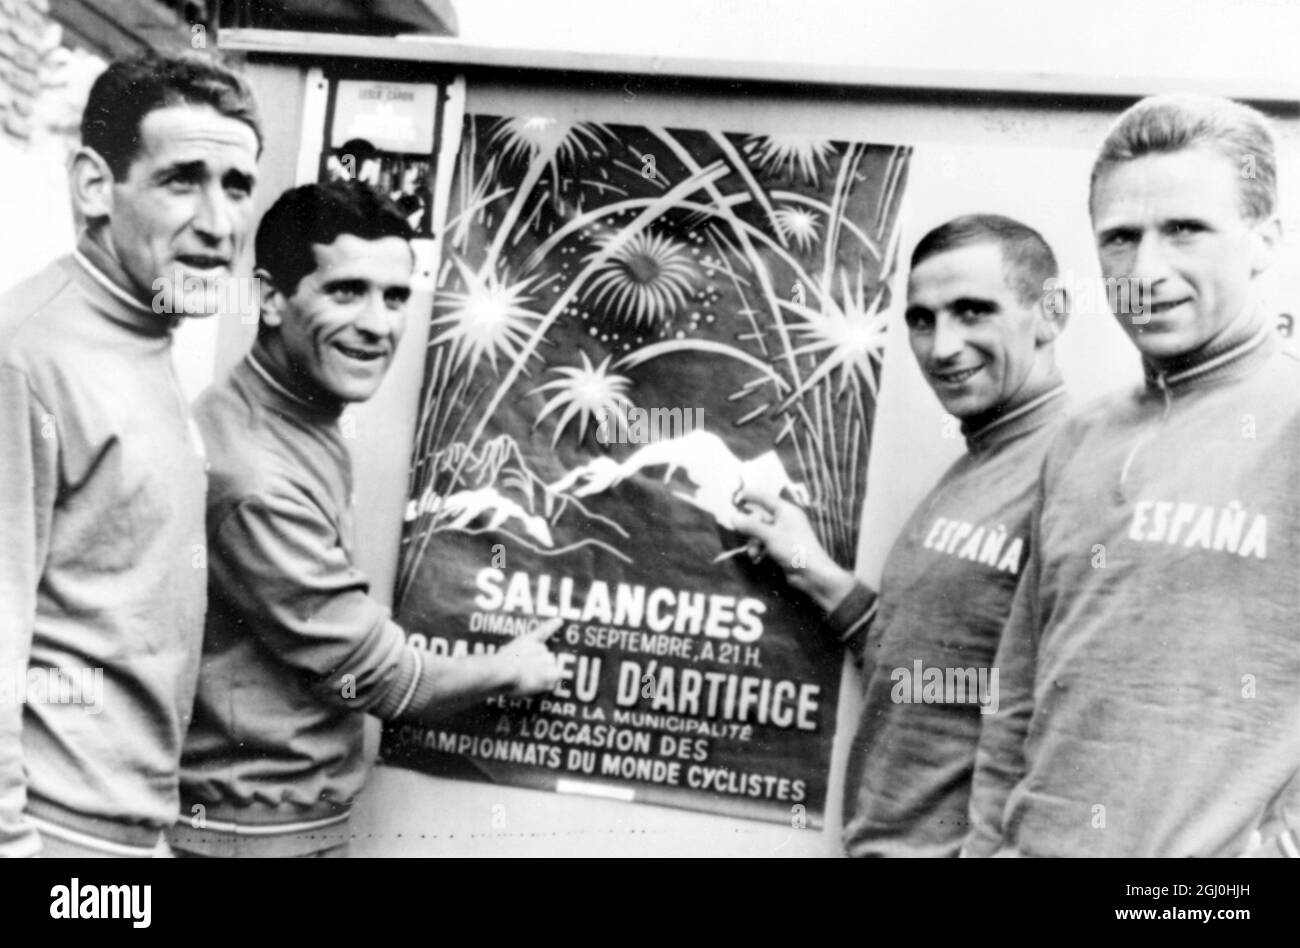 Sallanches, Frankreich : von links nach rechts die Spanier, die heute an der Radfahrer-Weltmeisterschaft teilnehmen, sind hier abgebildet, die sich am 4. September ausruhen. Sie sind, Otano, Manzaneque, Uriona und Gabica, studieren die Post der Ereignisse . 6. September 1964 Stockfoto